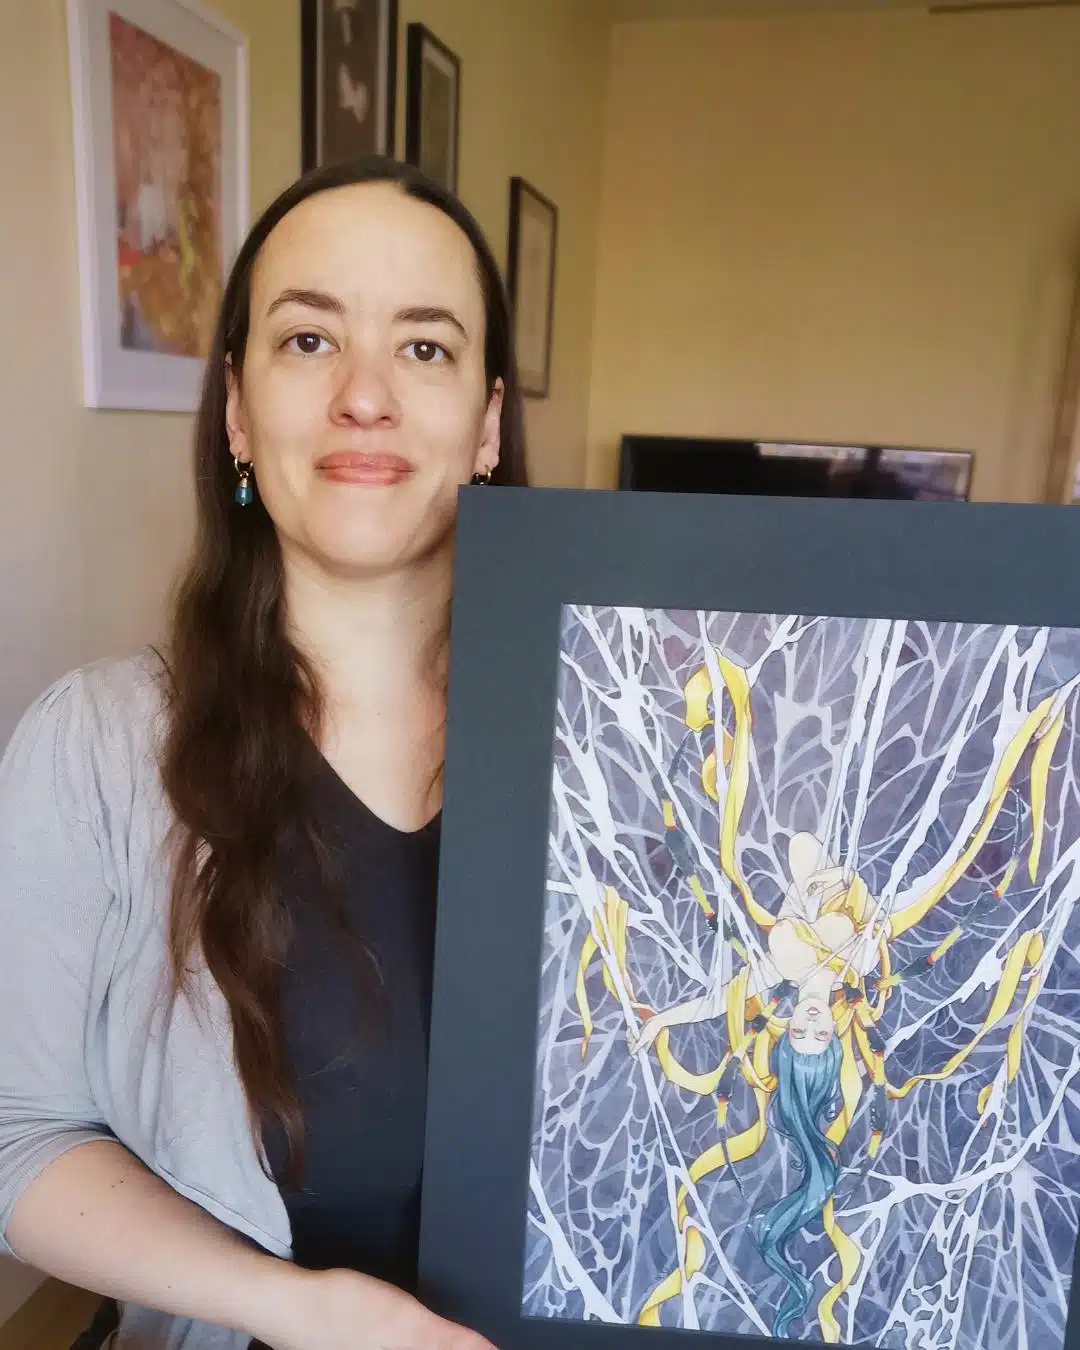 Un portrait de l'artiste Aemarielle tenant dans ses mains une de ses aquarelles originales issues de la collection Esprits japonais : Jorogumo. L'aquarelle représente une femme-araignée à l'envers dans une toile complexe. Elle est drapée de rubans de soie jaune.